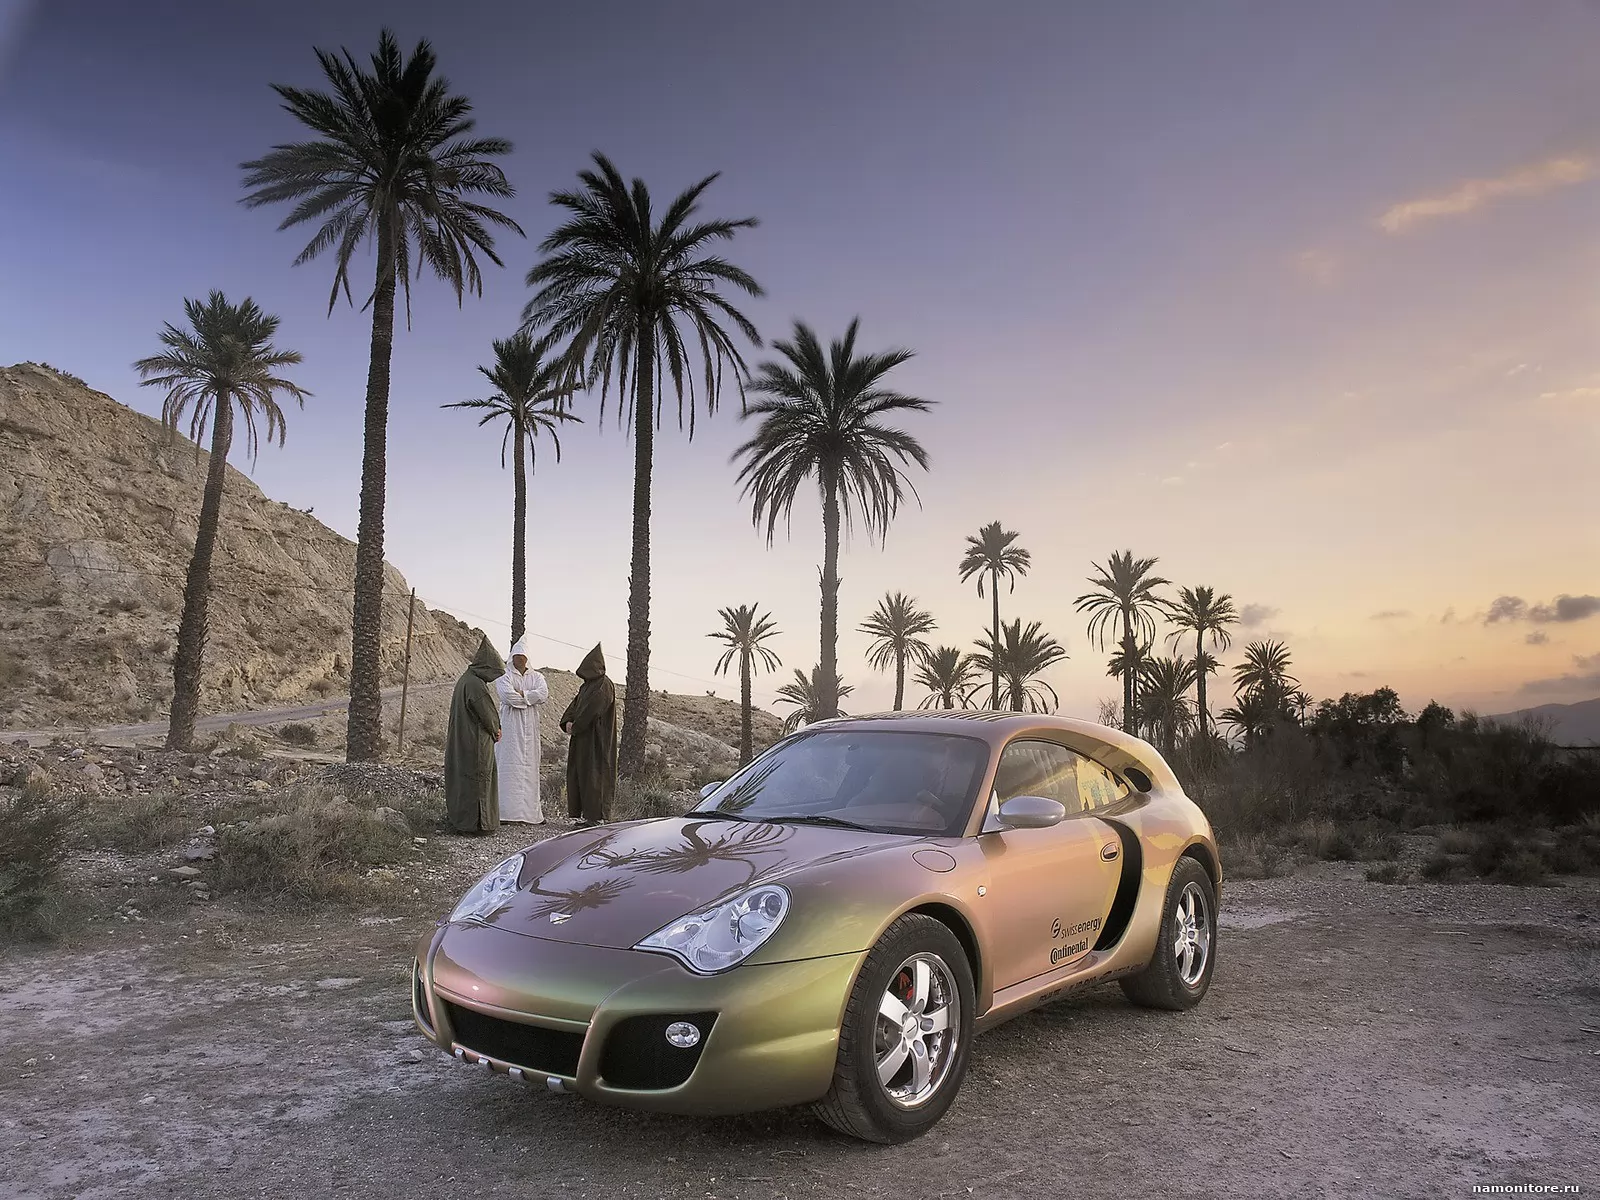 Rinspeed Bedouin, based on Porsche 996, Porsche, Rinspeed, ,  